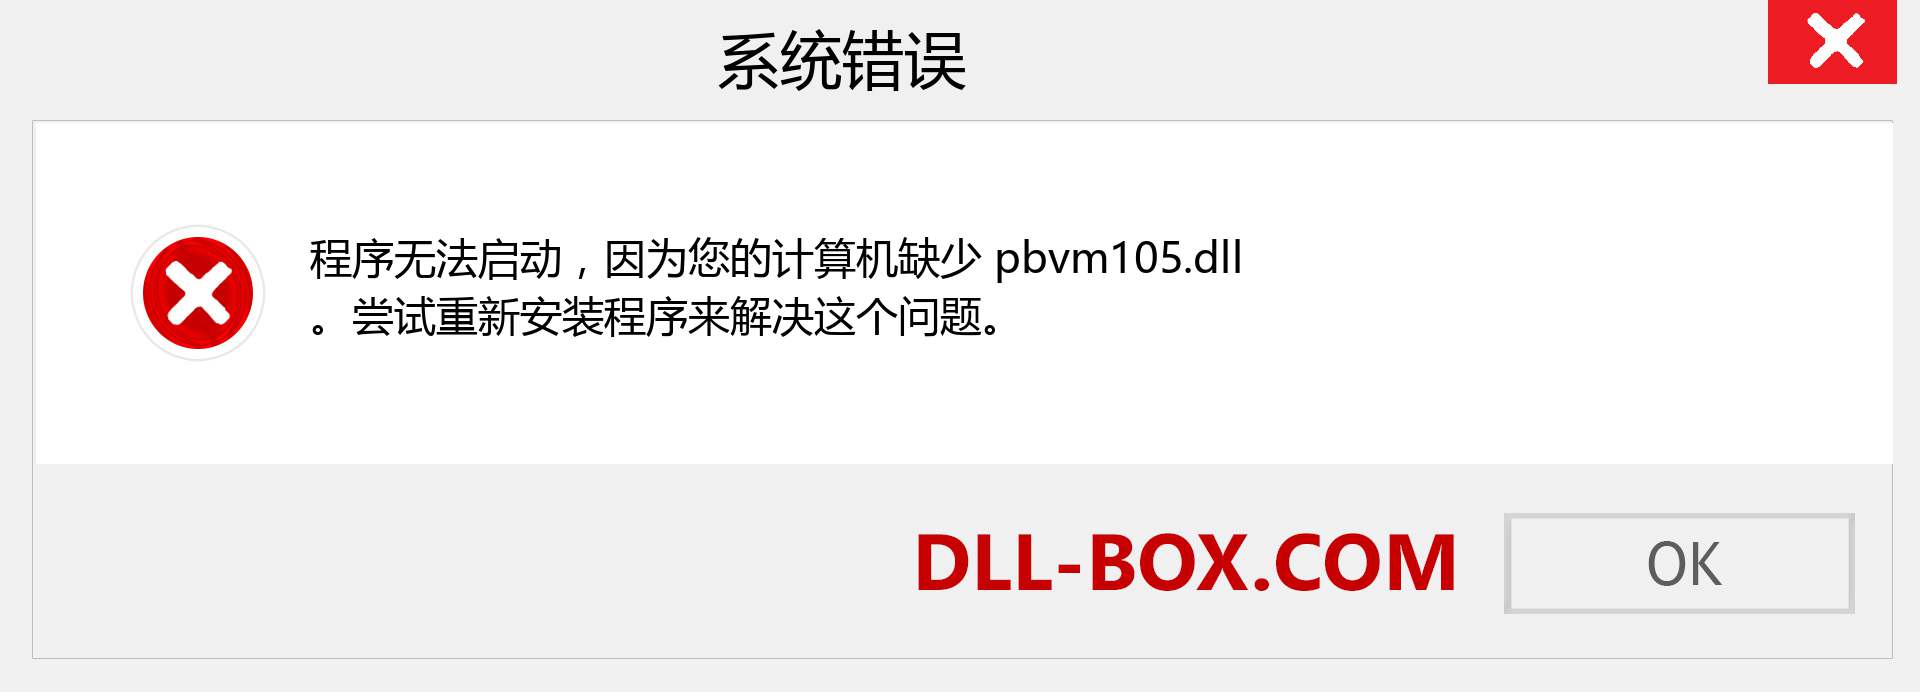 pbvm105.dll 文件丢失？。 适用于 Windows 7、8、10 的下载 - 修复 Windows、照片、图像上的 pbvm105 dll 丢失错误